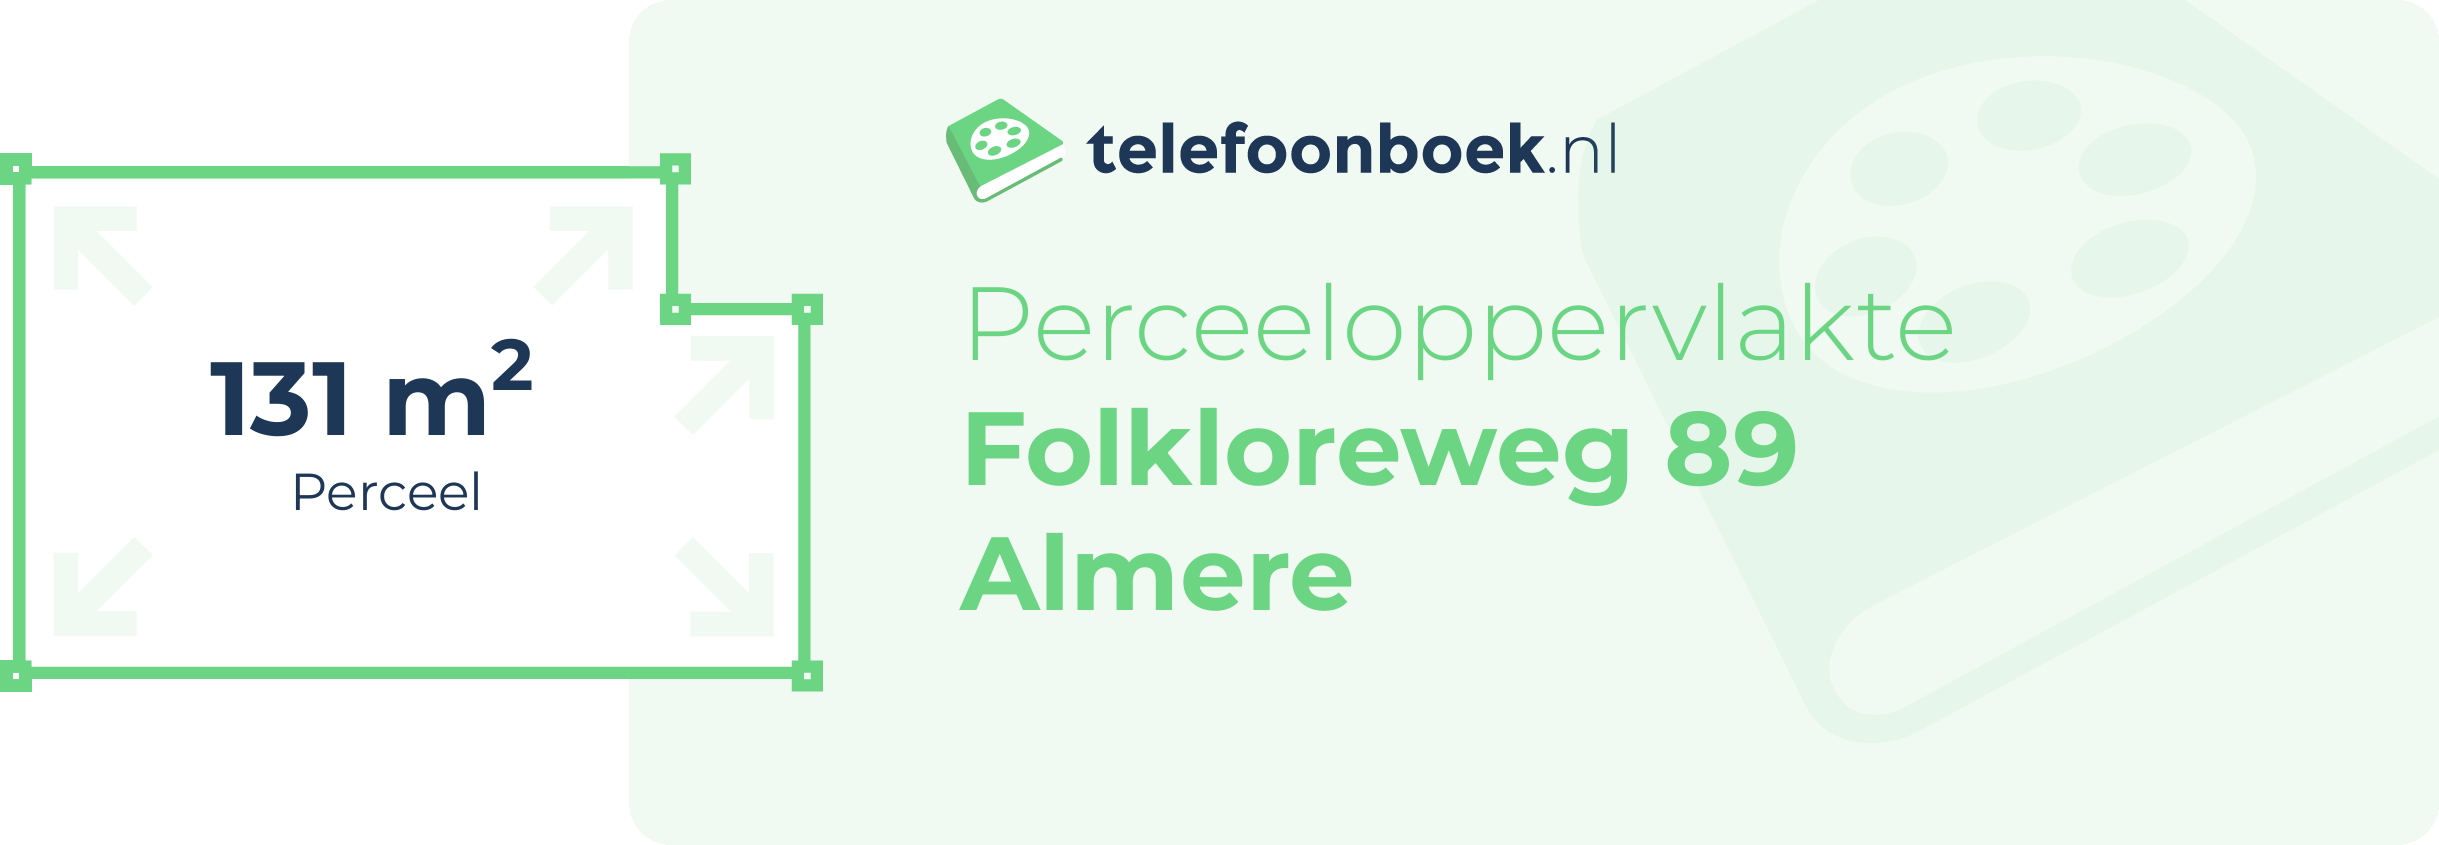 Perceeloppervlakte Folkloreweg 89 Almere